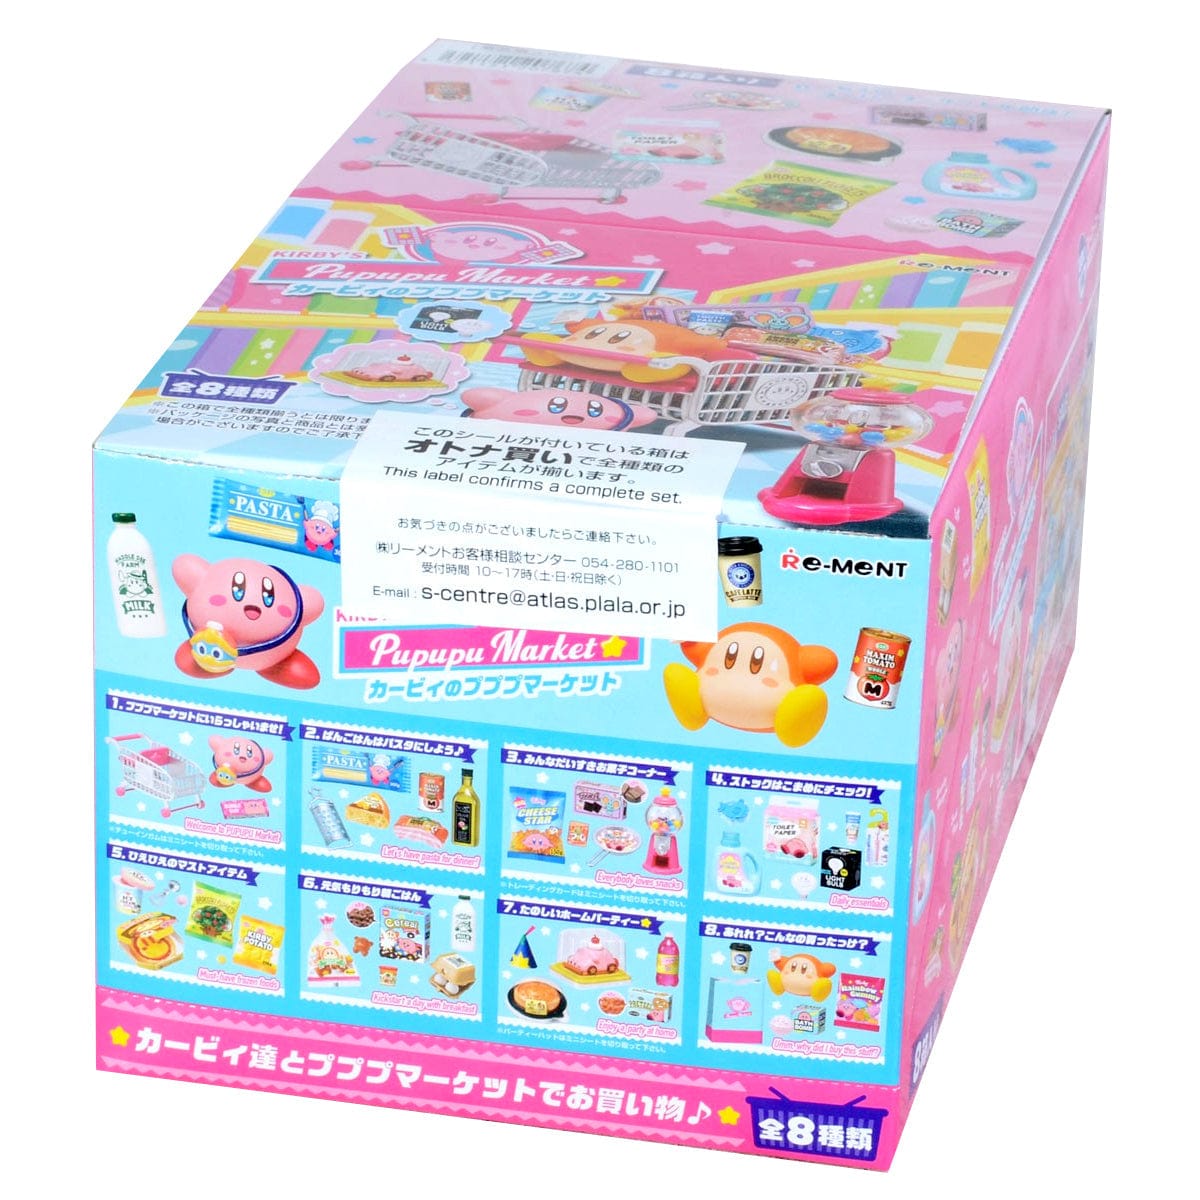 JBK Rement Kirby's Pupupu Market Surprise Box Kawaii Gifts 4521121207674